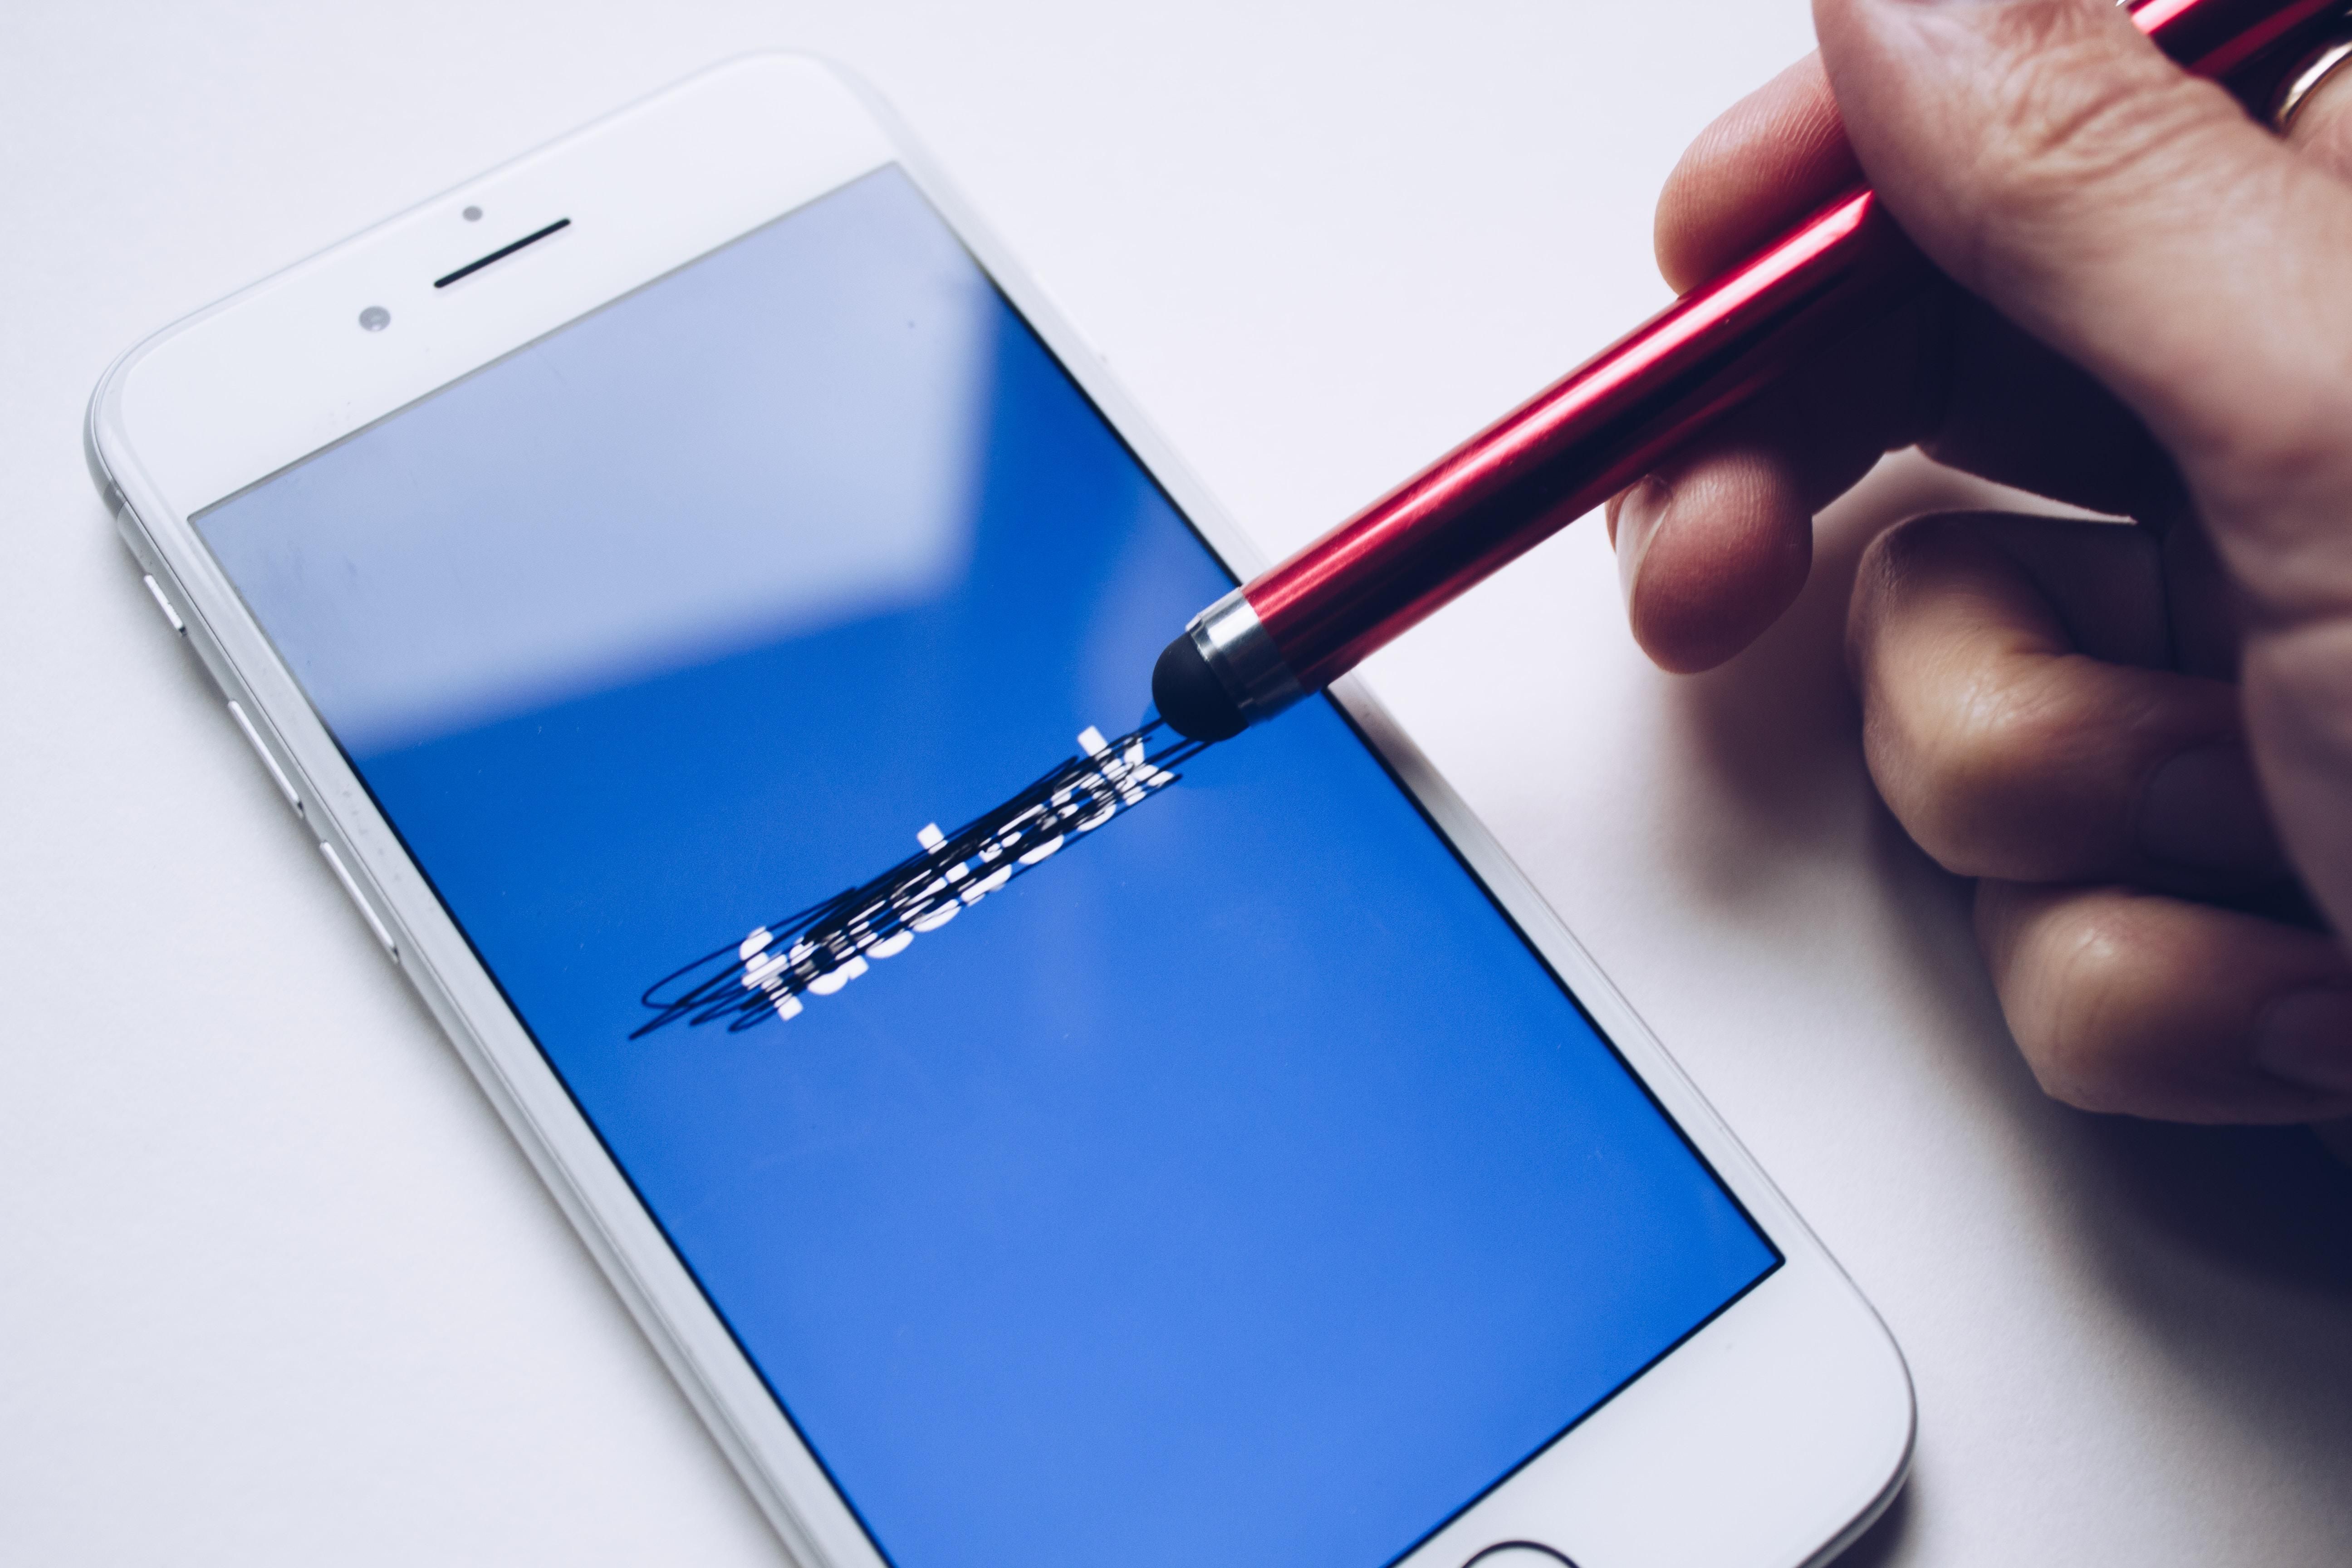 Áthúzott Facebook logó egy okostelefonon és egy toll egy ember kezében